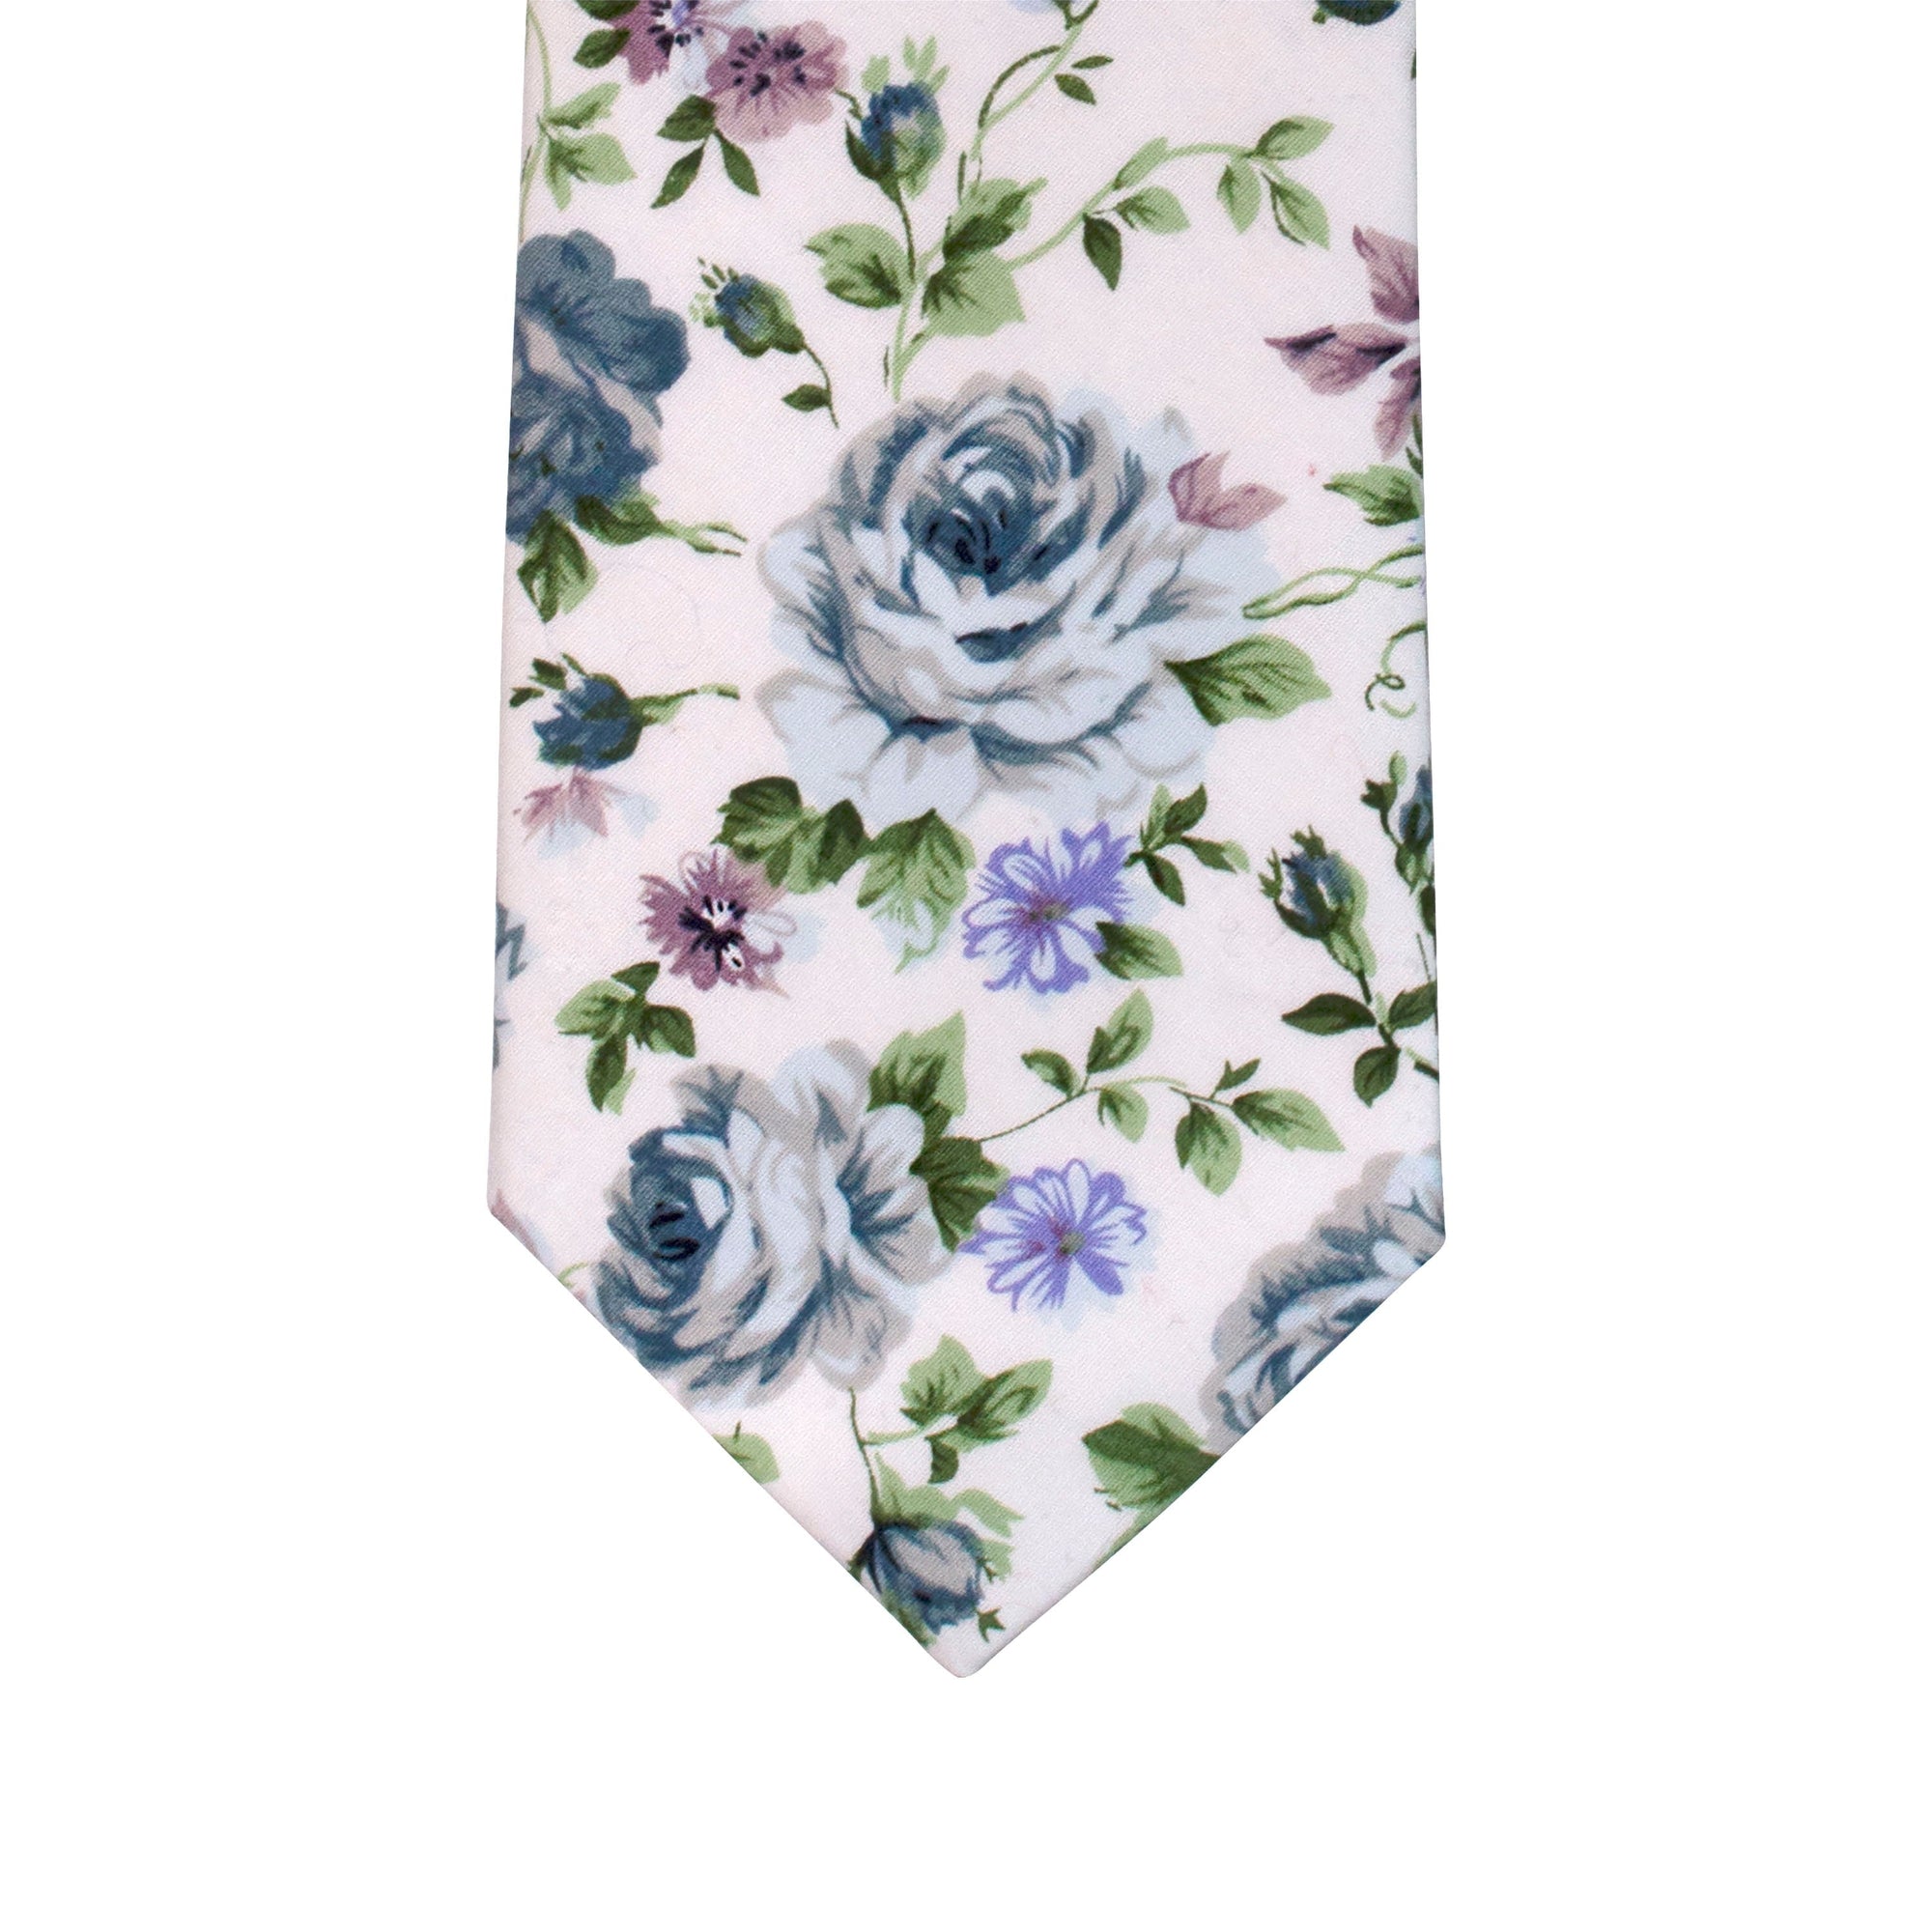 Cotton Floral Tie in Cream-Neckties-MarZthomson-Cufflinks.com.sg